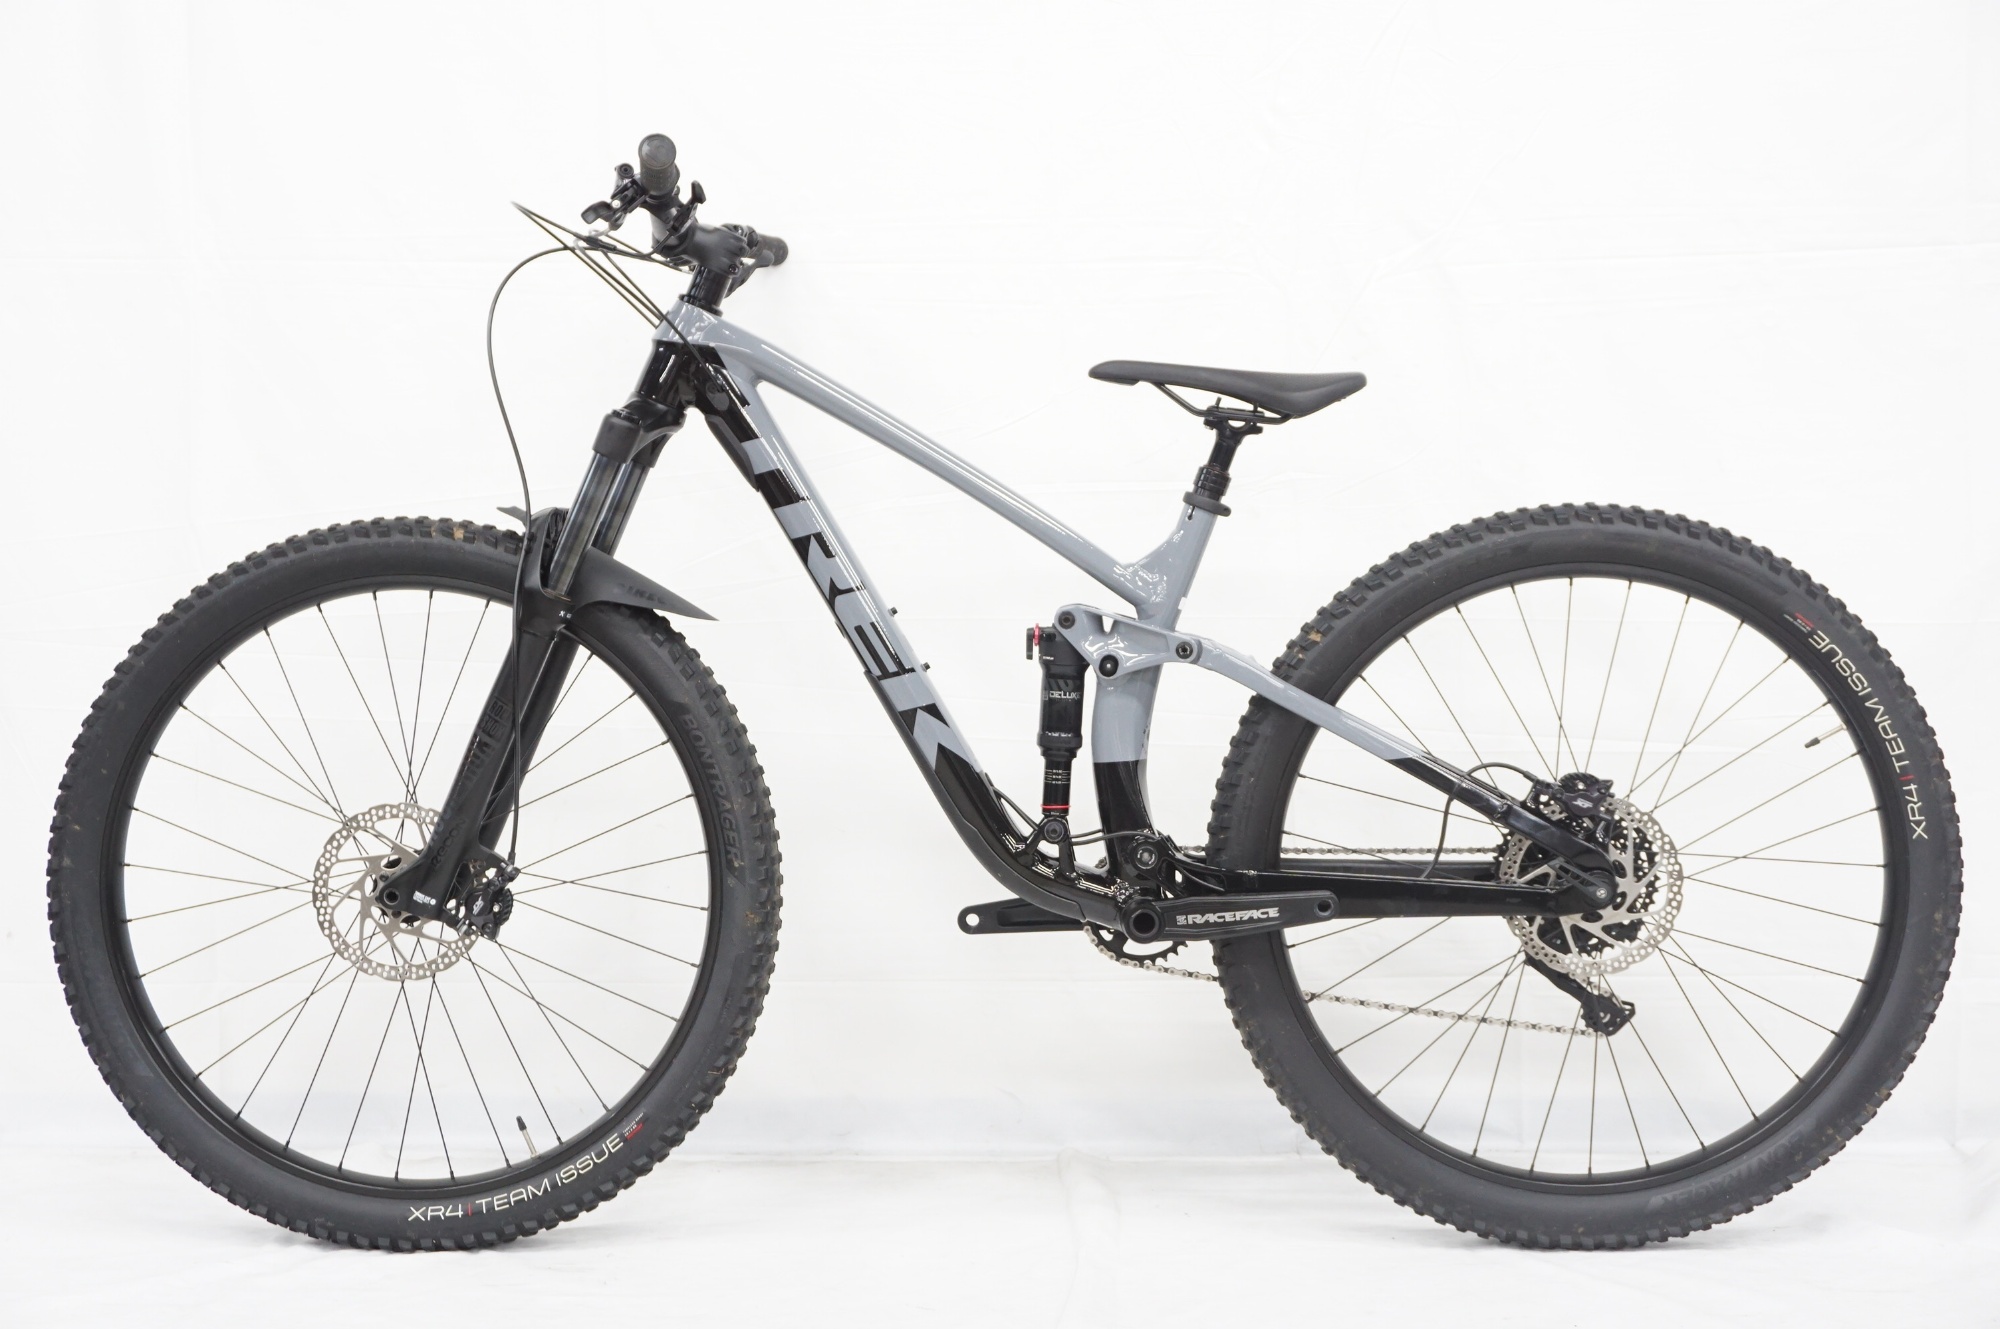 TREK [ Trek ] FUEL EX5 2020 год модели горный велосипед /. внезапный .. магазин 